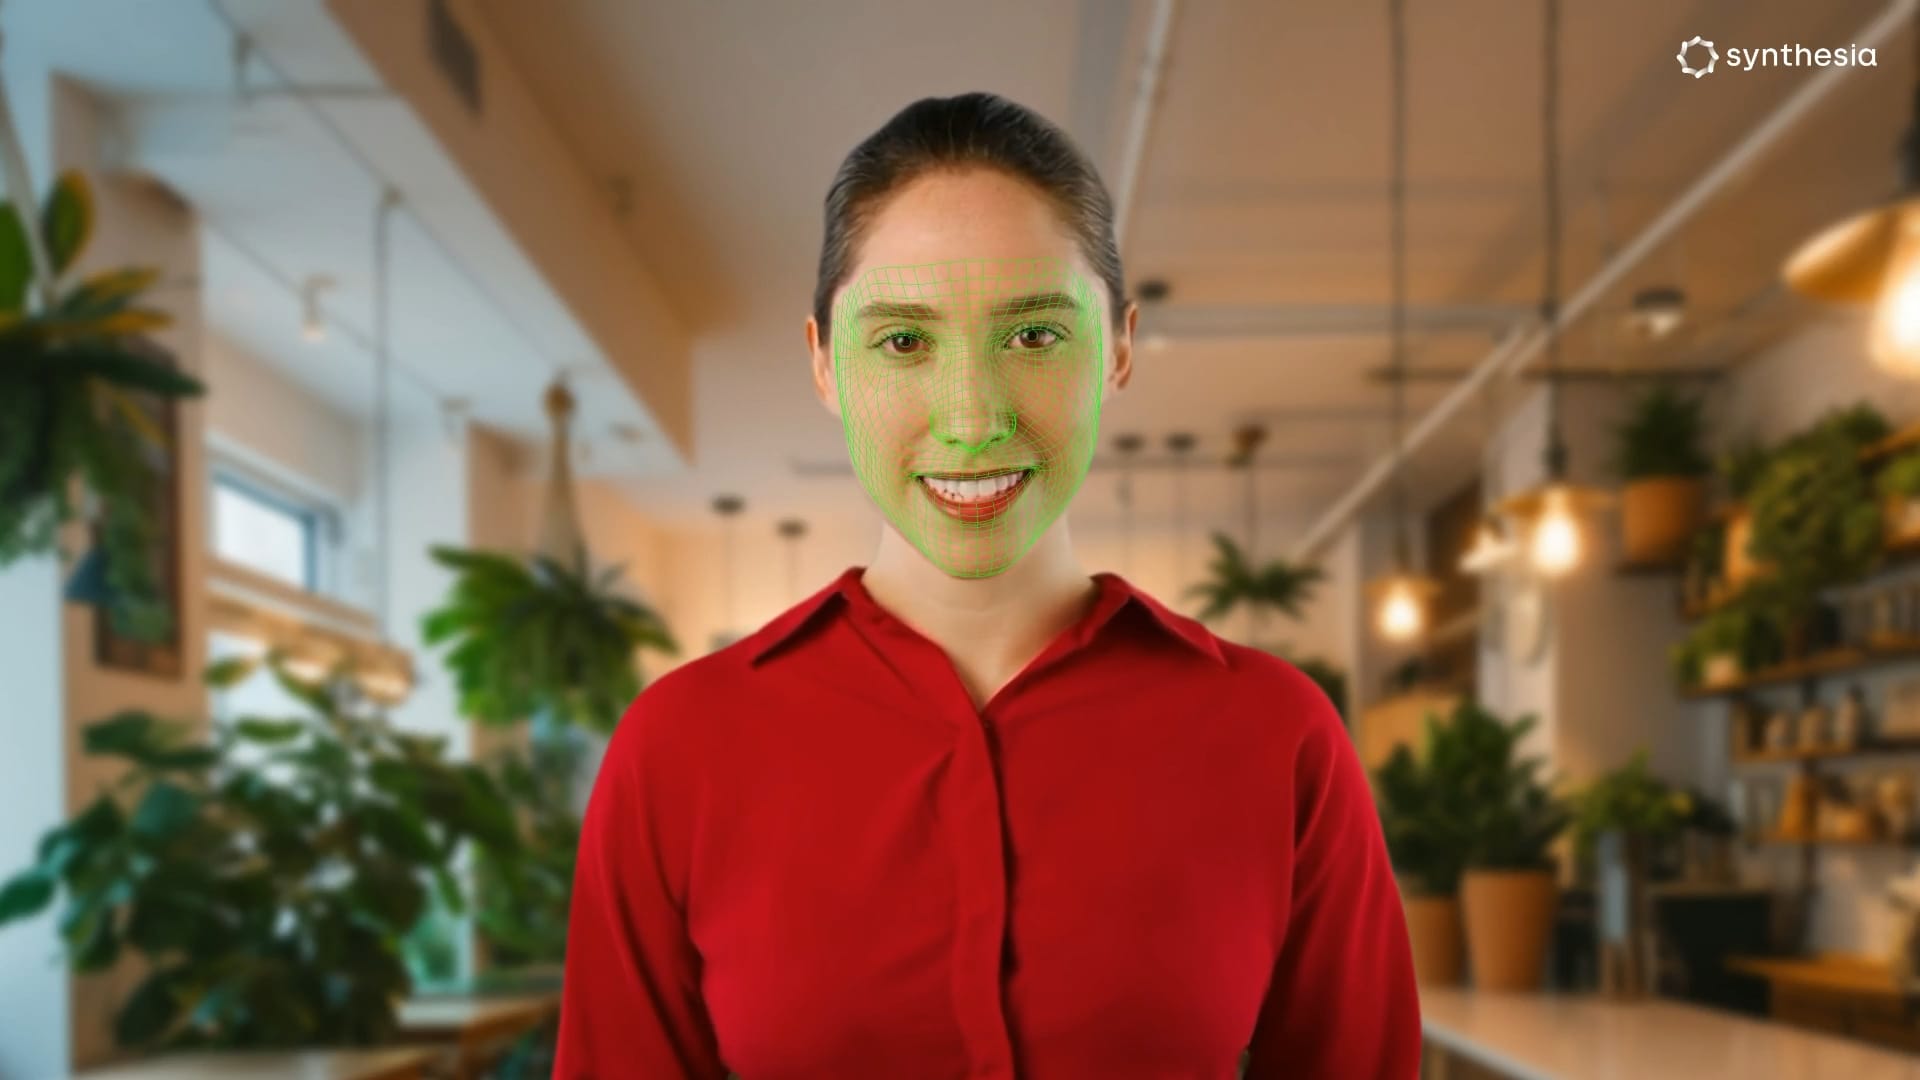 Door Nvidia gesteunde startup Synthesia onthult AI-avatars die menselijke emoties kunnen overbrengen